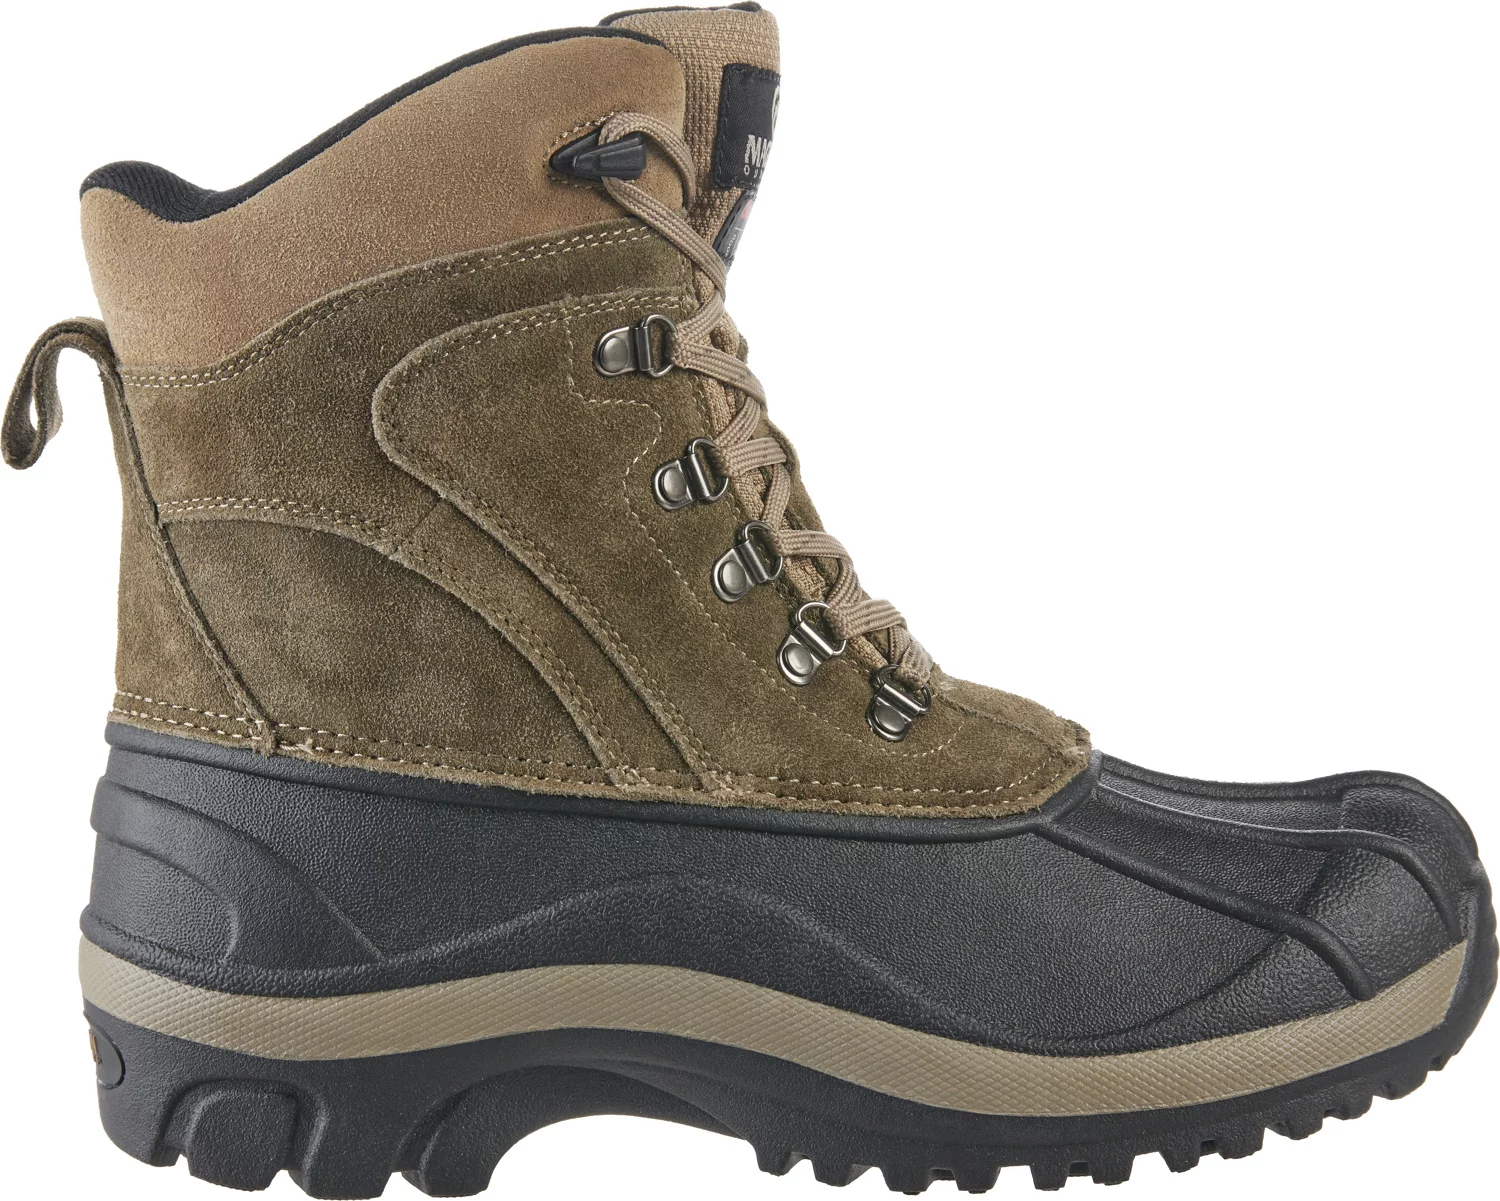 Men's Boots | Men's Casual Boots, Men's Hiking Boots, Men's Work ...